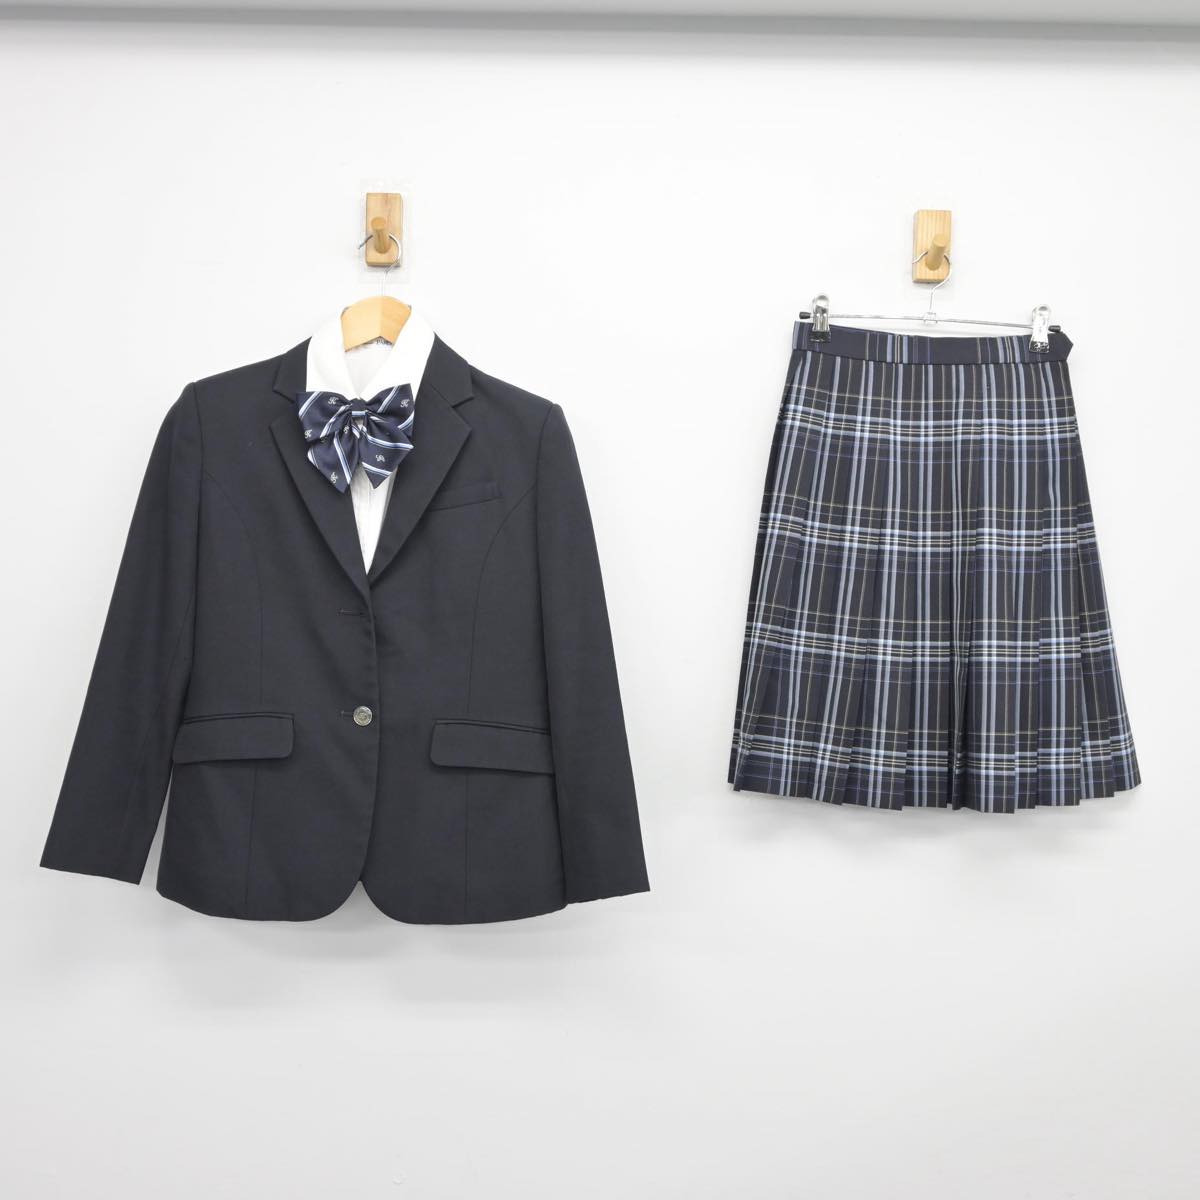 鵠沼高校 学校指定コート、セーター、ベストの3点セット - 神奈川県の家具